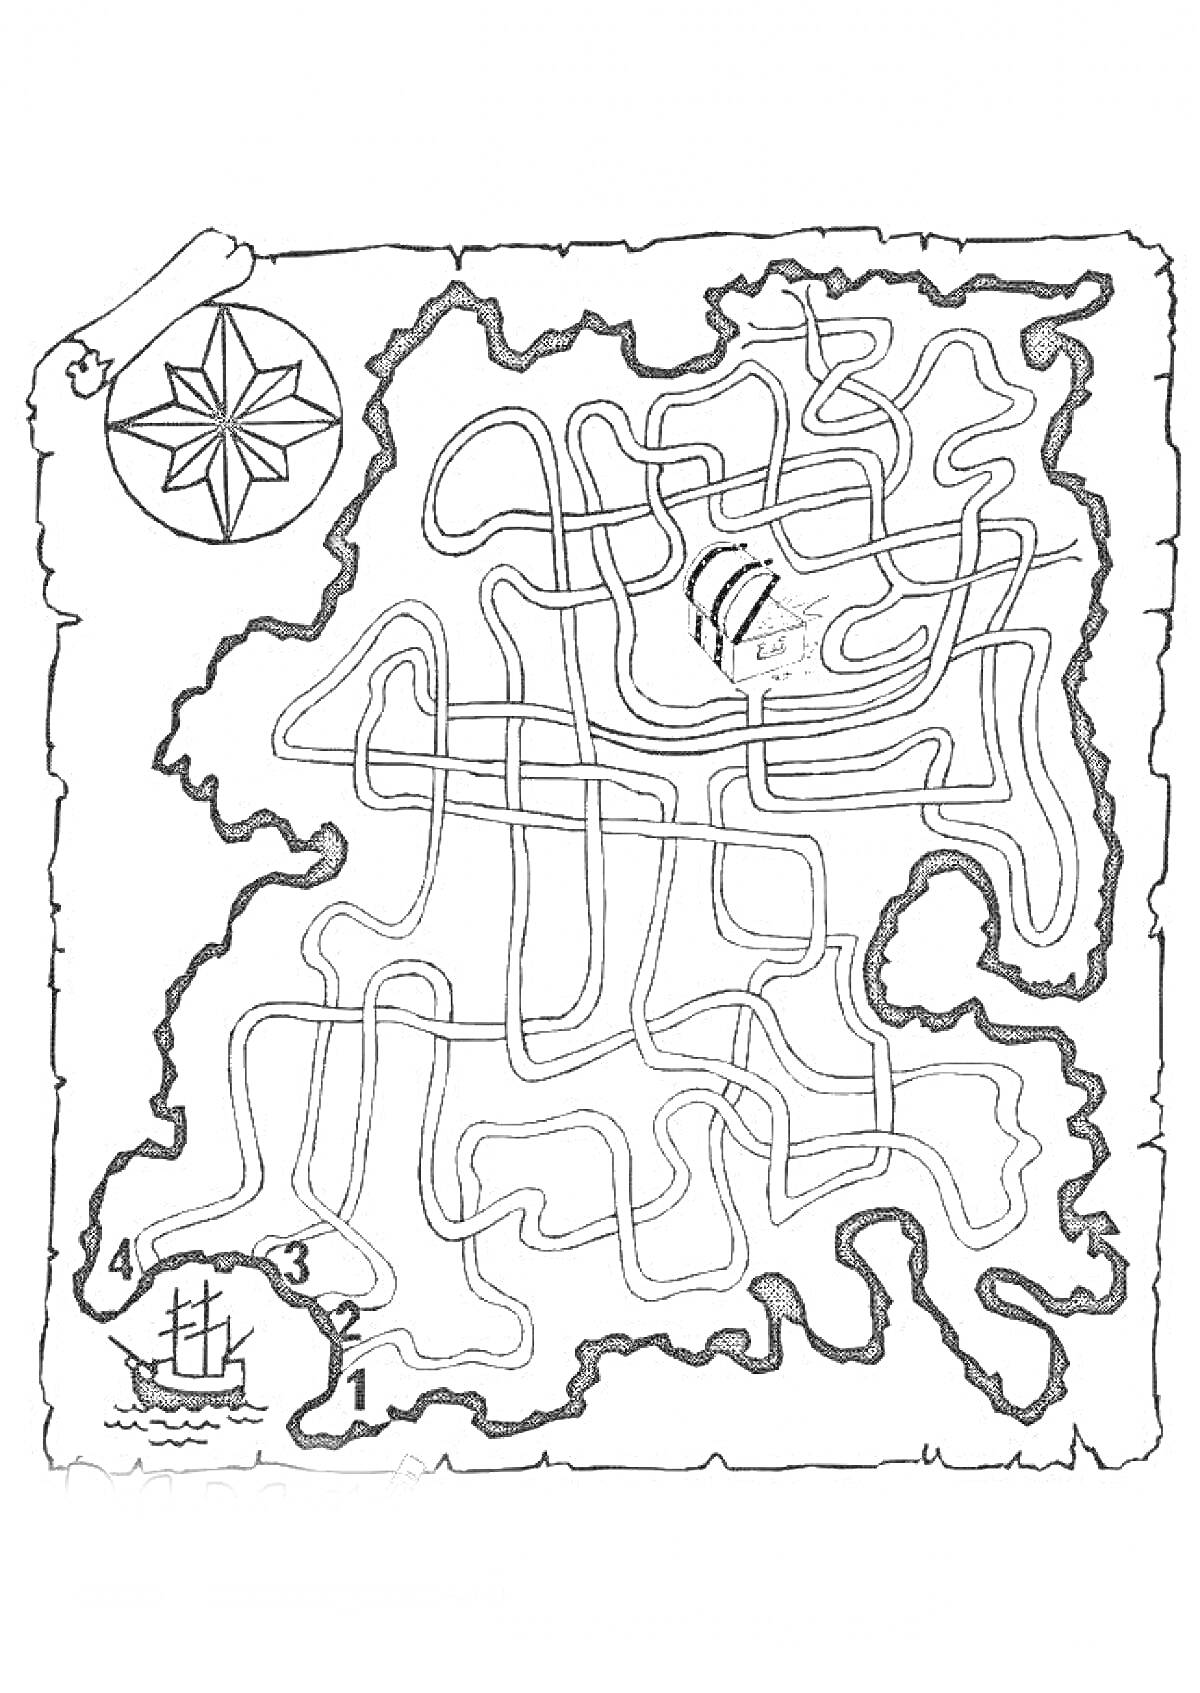 Карта Сокровищ с лабиринтом, компасом и сундуком с сокровищами